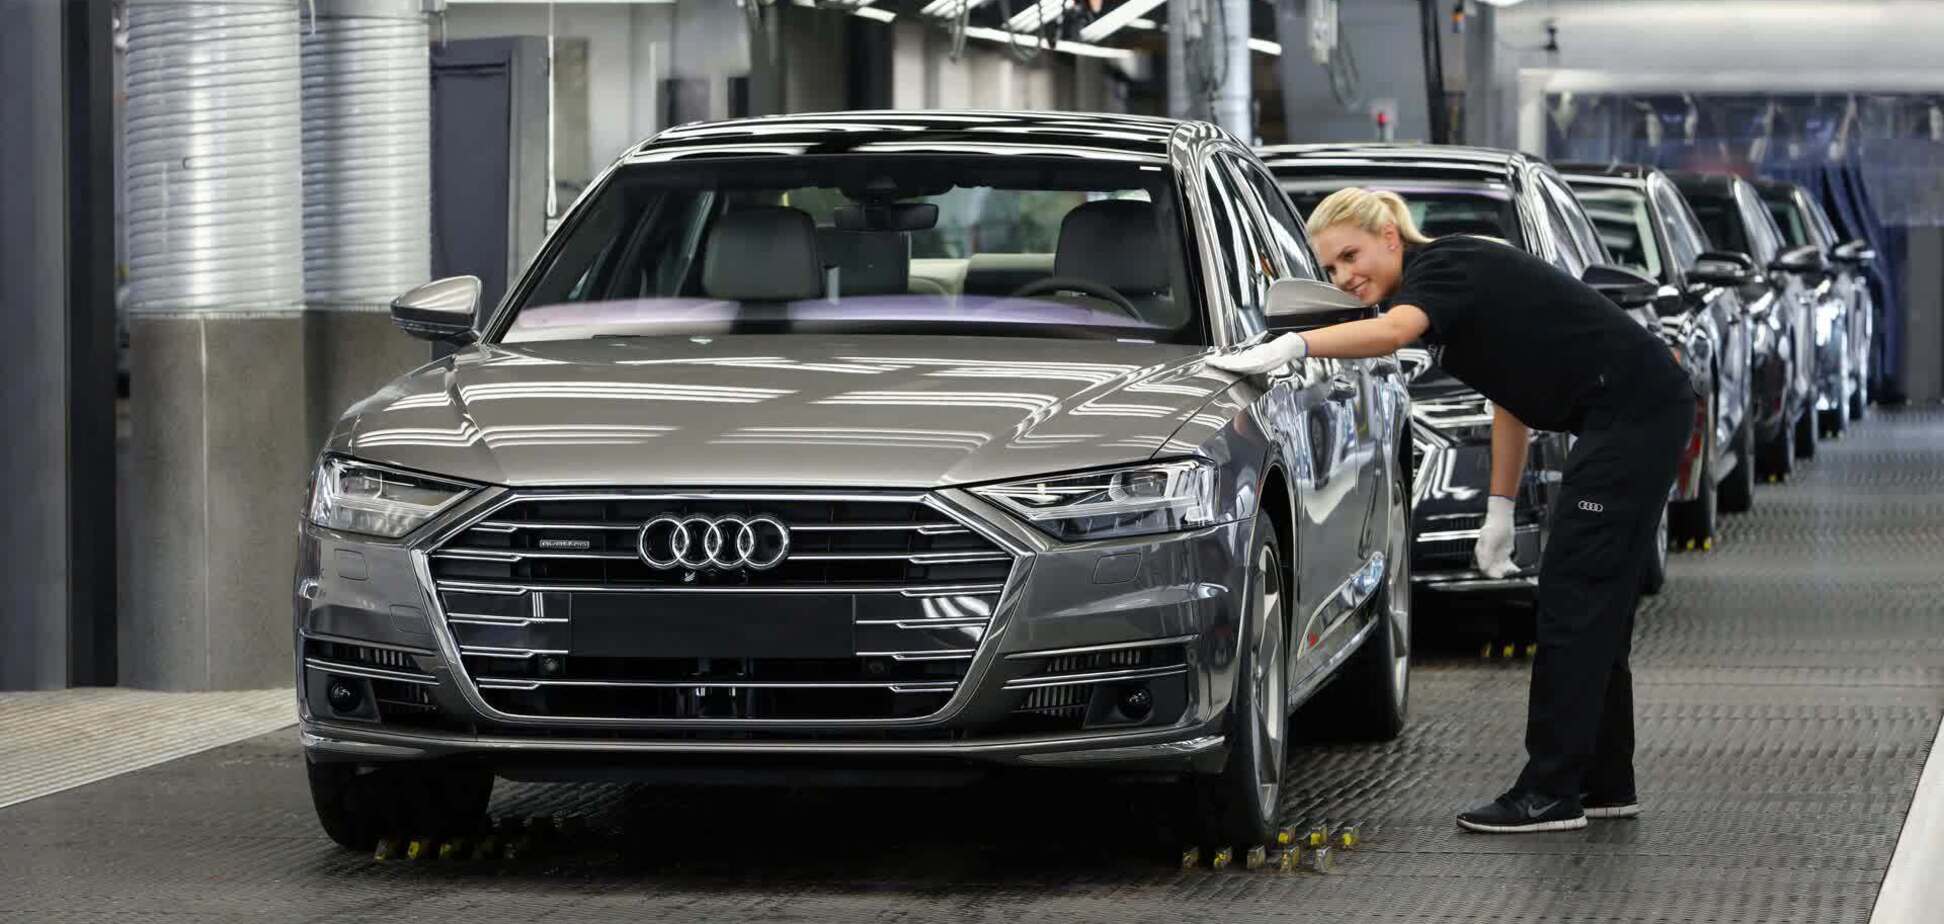 Audi зупинила виробництво 8 моделей через війну в Україні